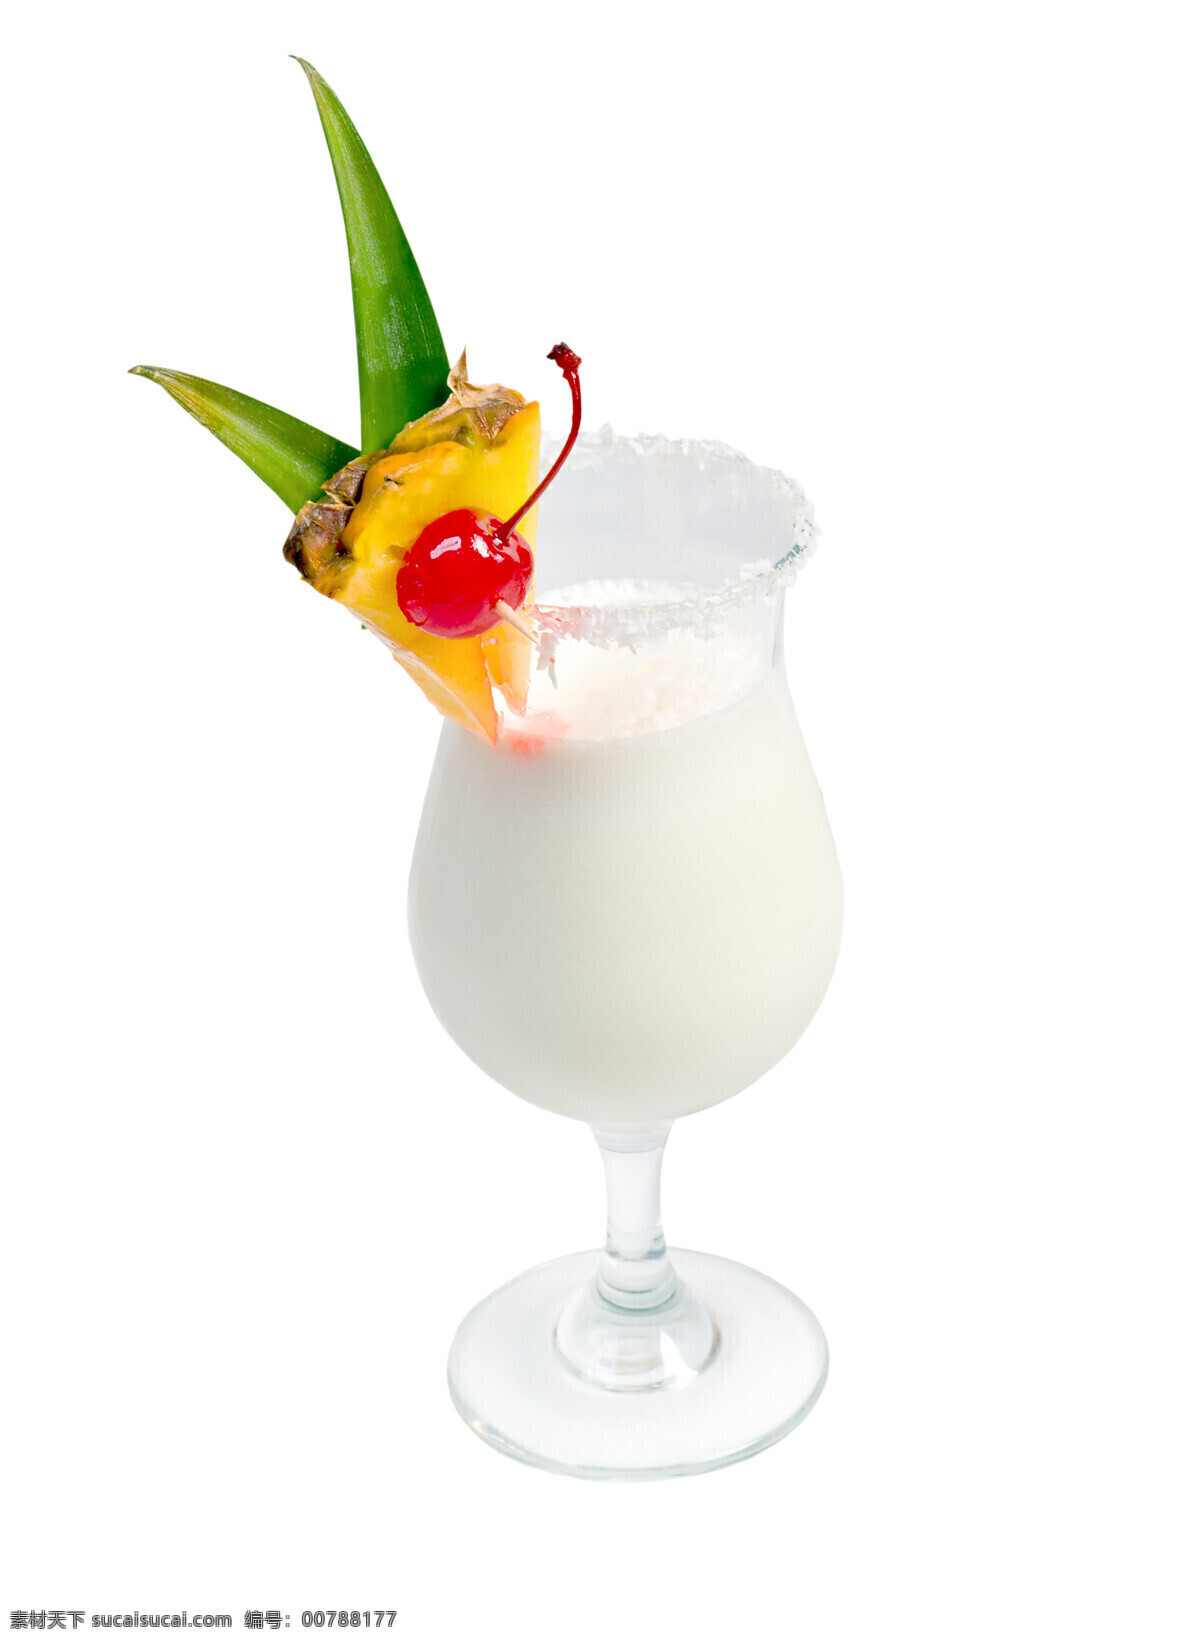 果汁 水果 新鲜水果 切开水果 波罗 樱桃 玻璃杯 高角杯 酒类图片 餐饮美食